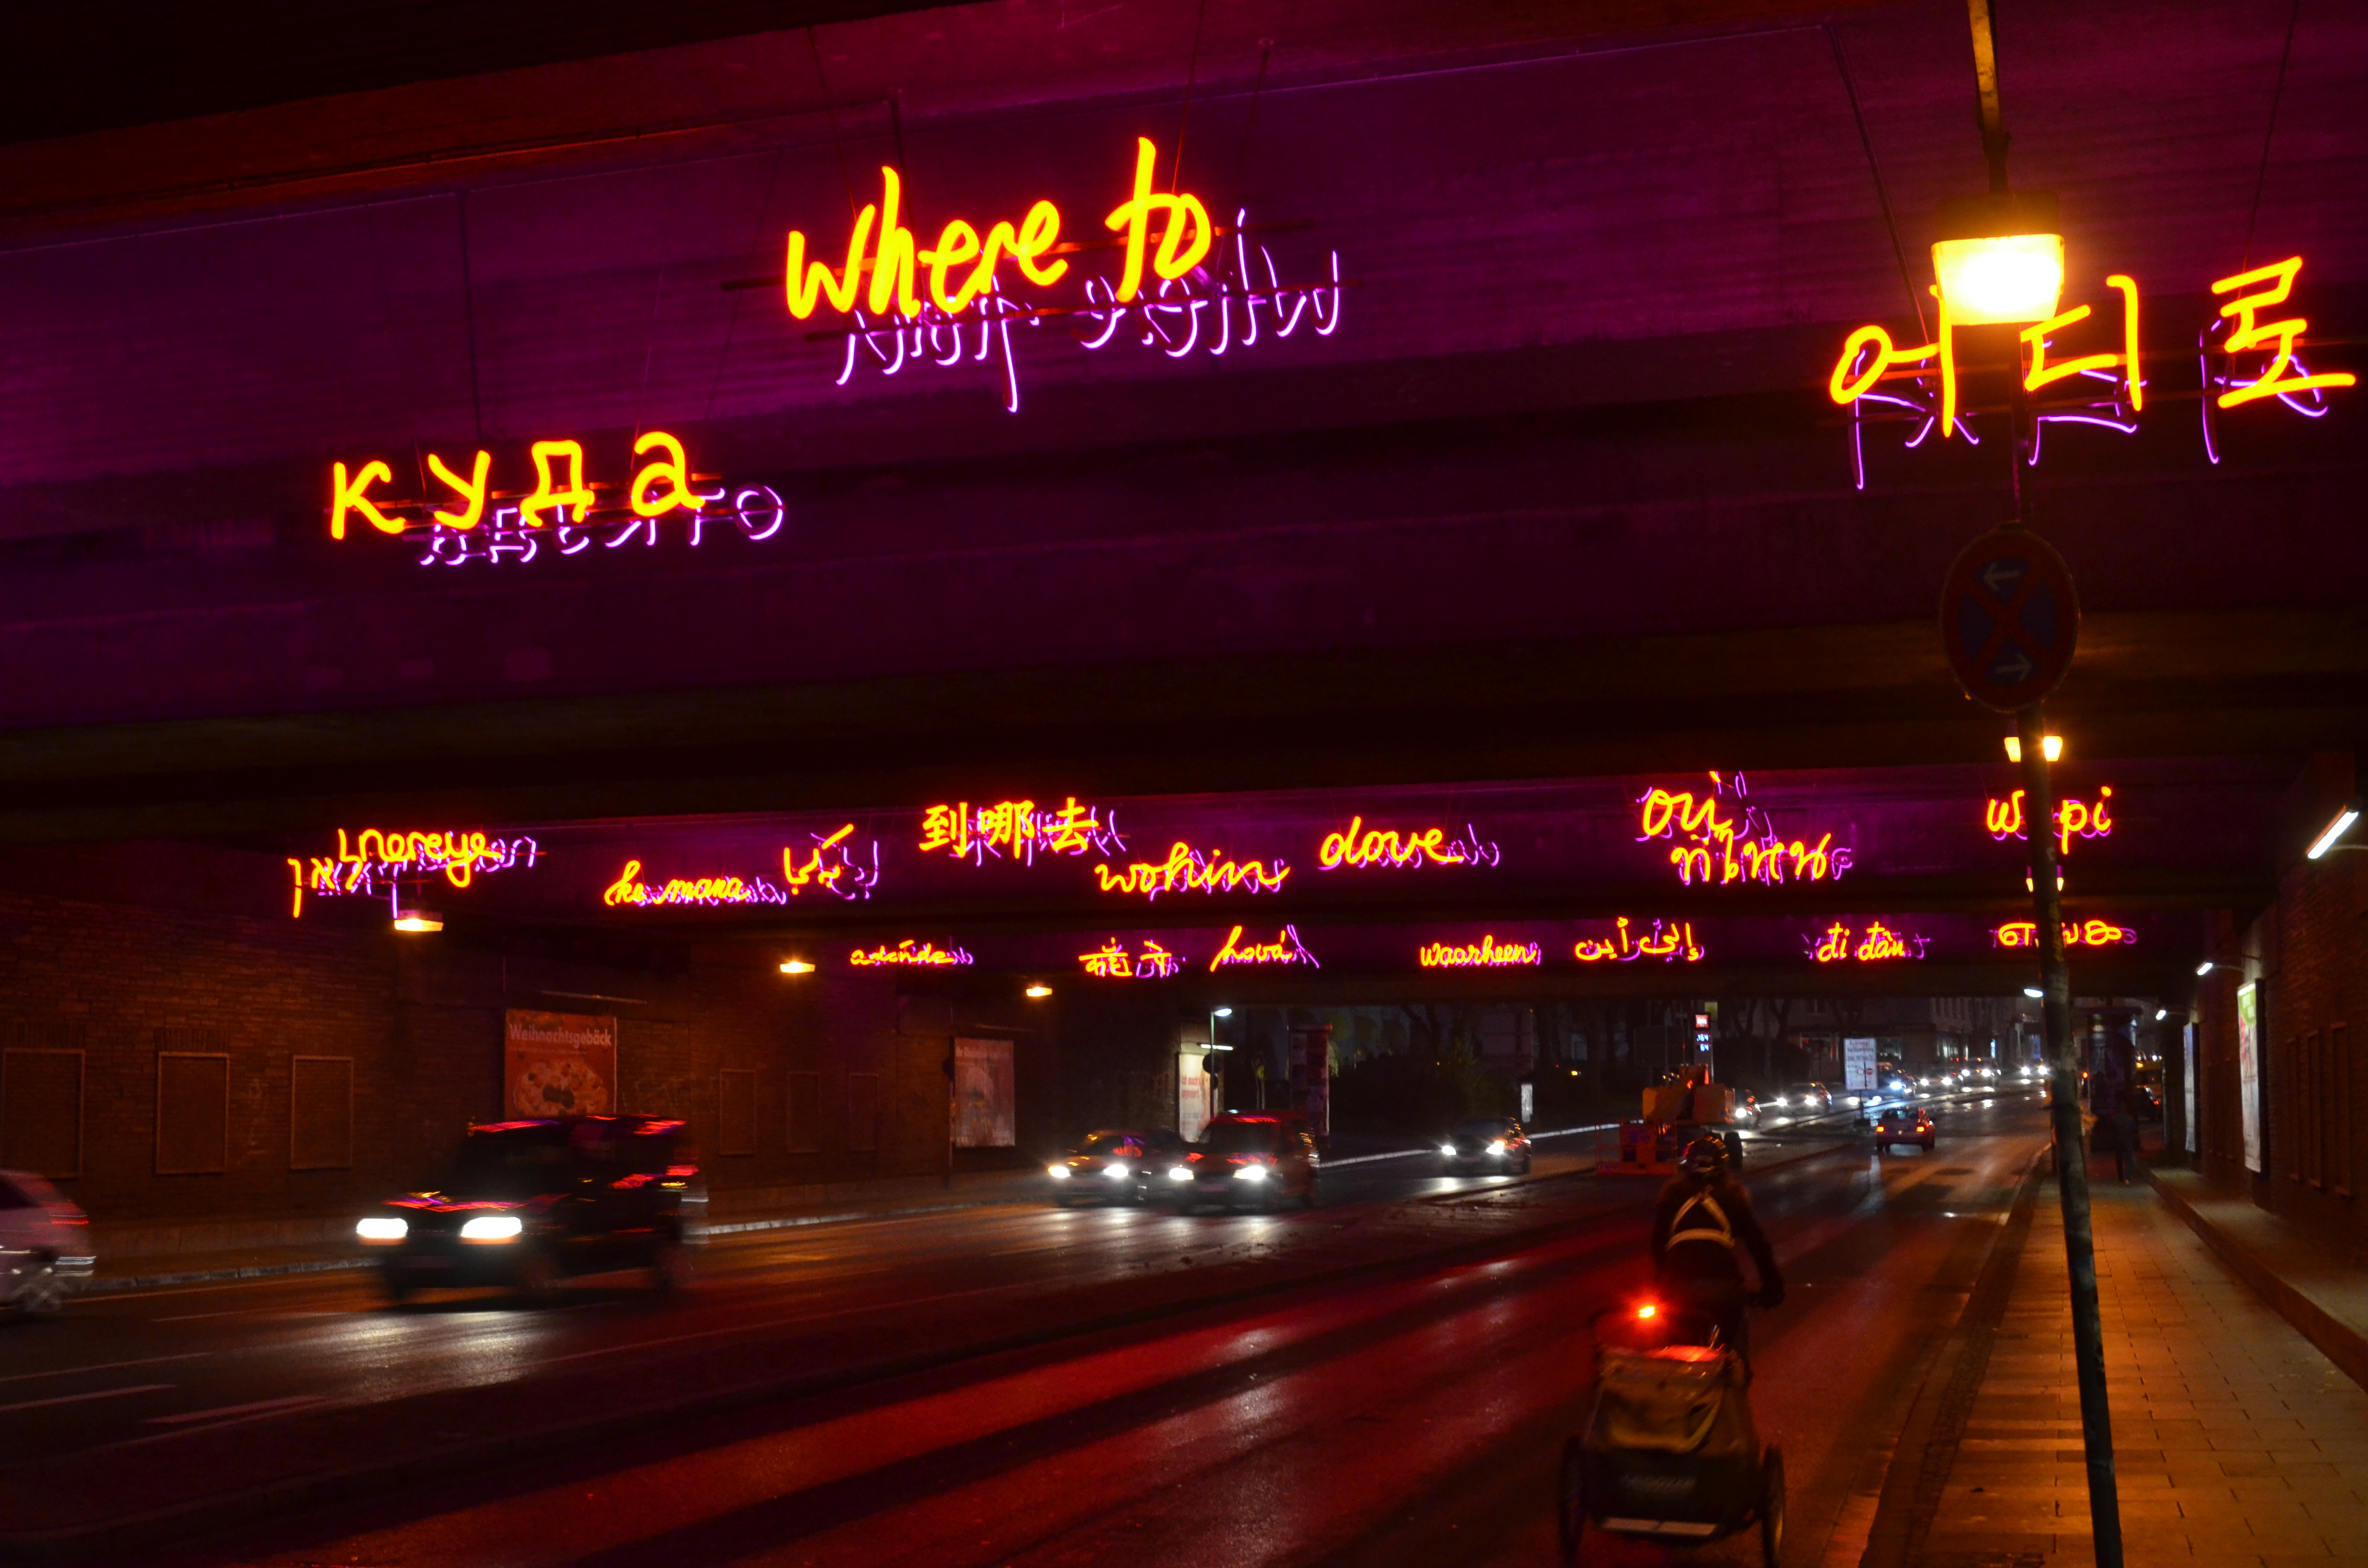 Ansicht eines Tunnels am Bochumer Hauptbahnhof. Im Fokus Neonschriftzüge mit Begrüßungtexten in mehreren Sprachen